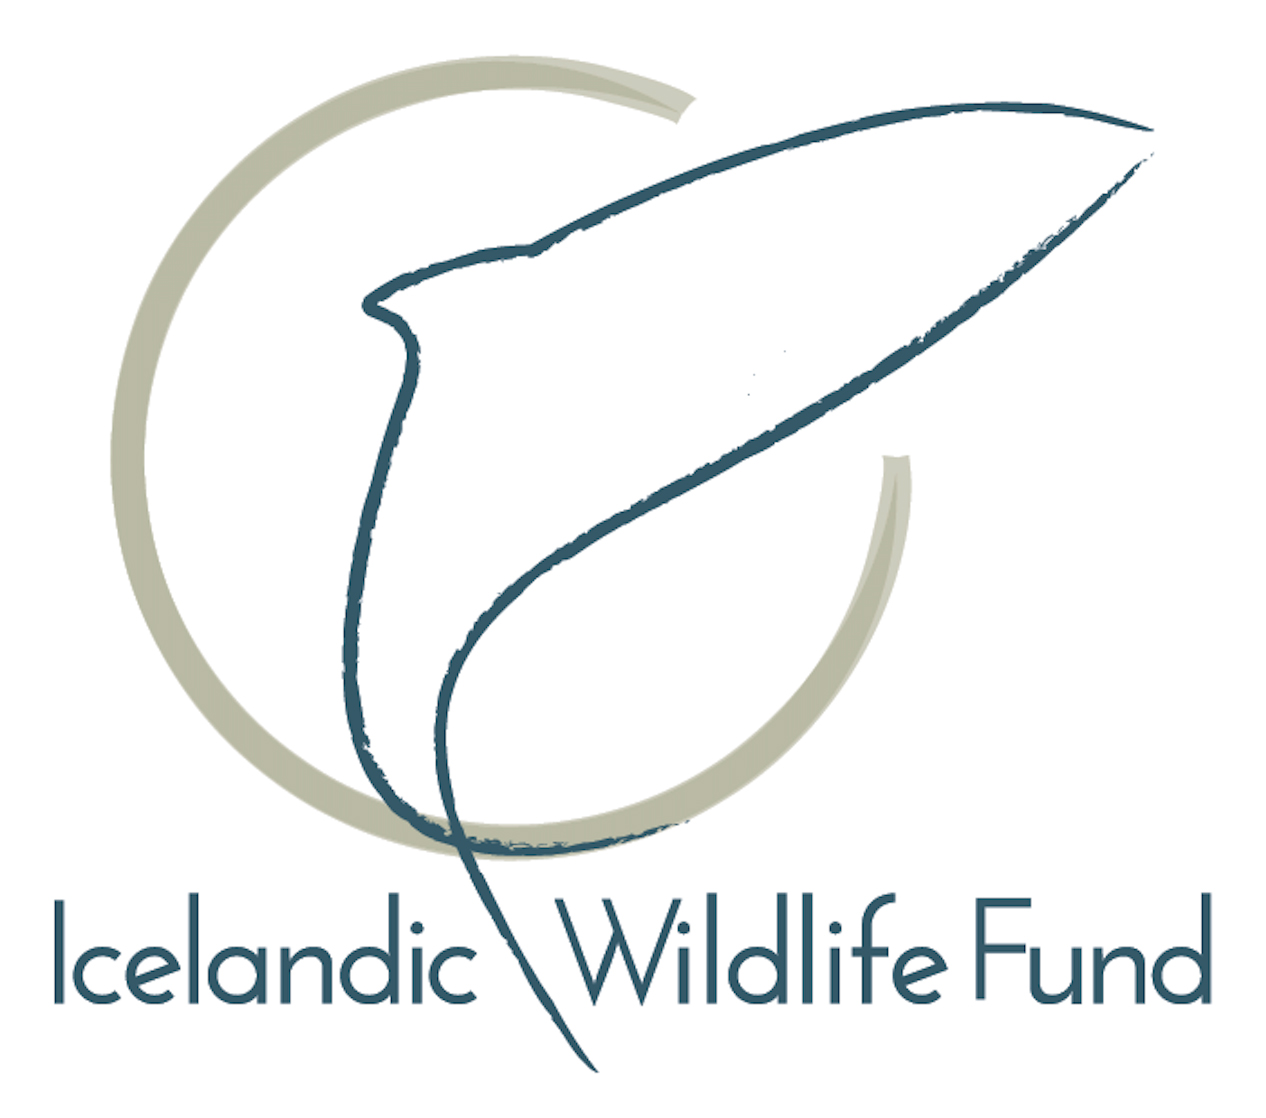 Brugðist til varna fyrir umhverfi og lífríki Íslands: Iceland Wildlife Fund stofnaður